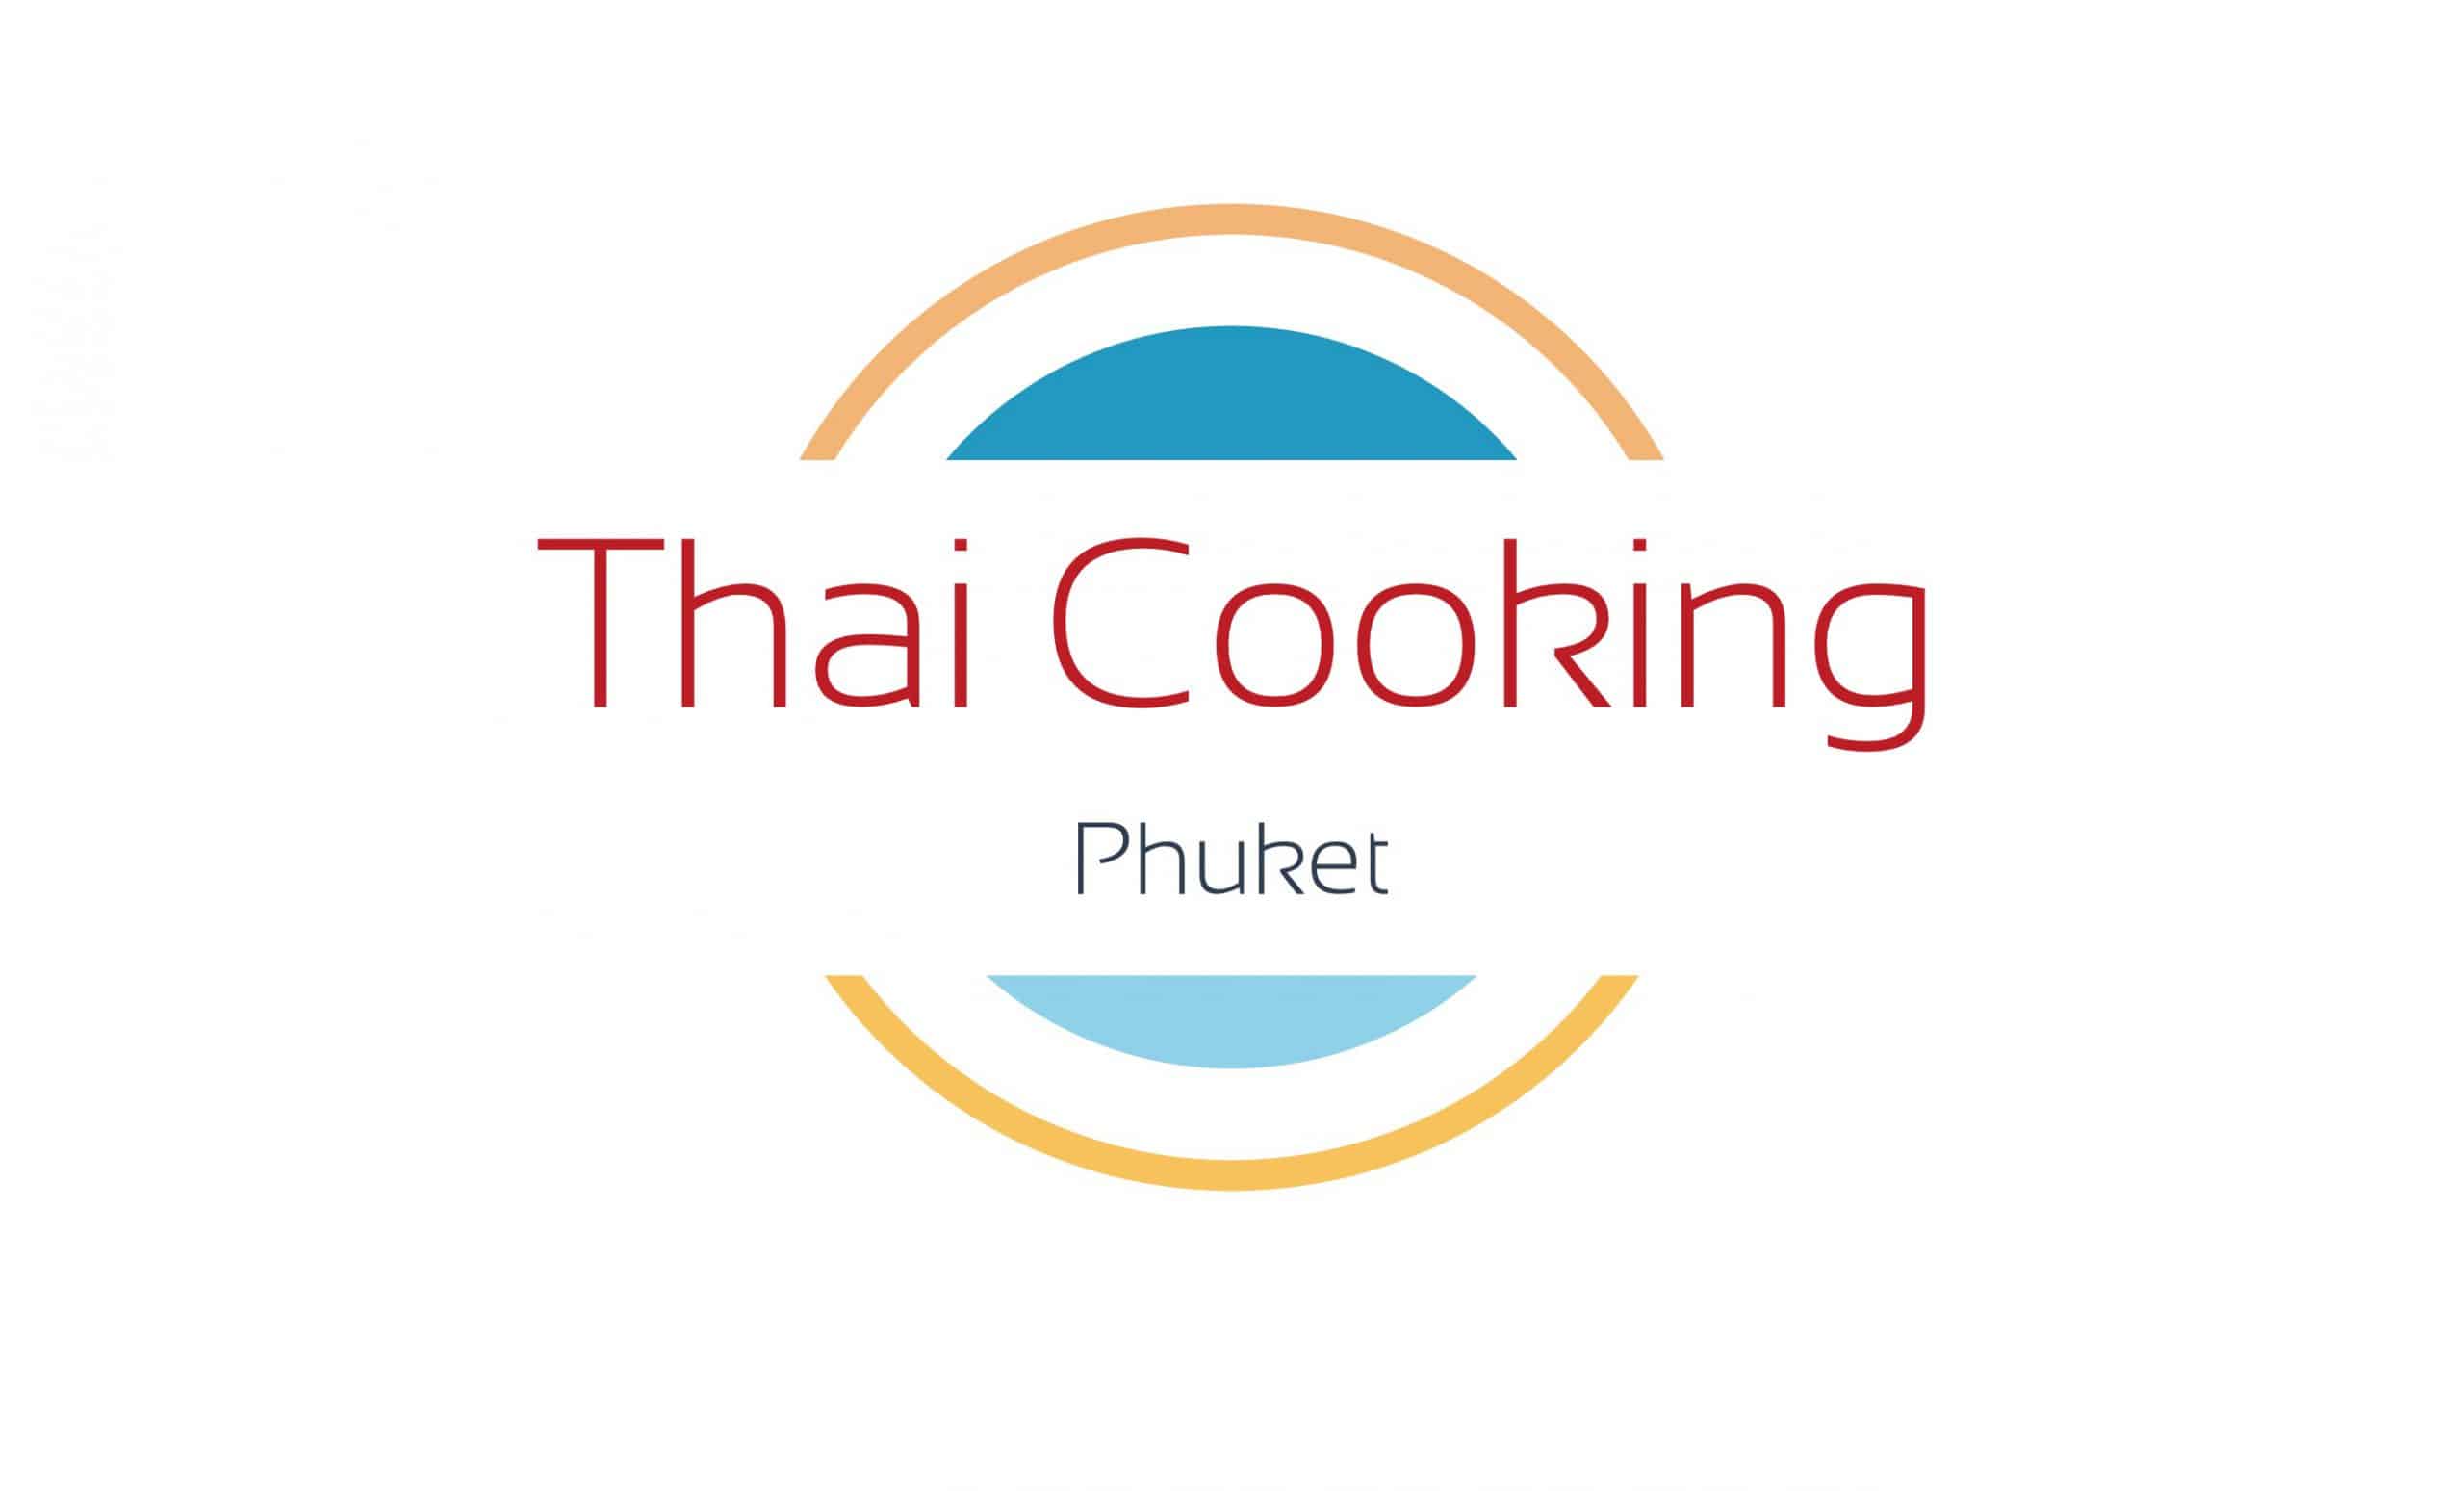 Thai Cooking Phuket